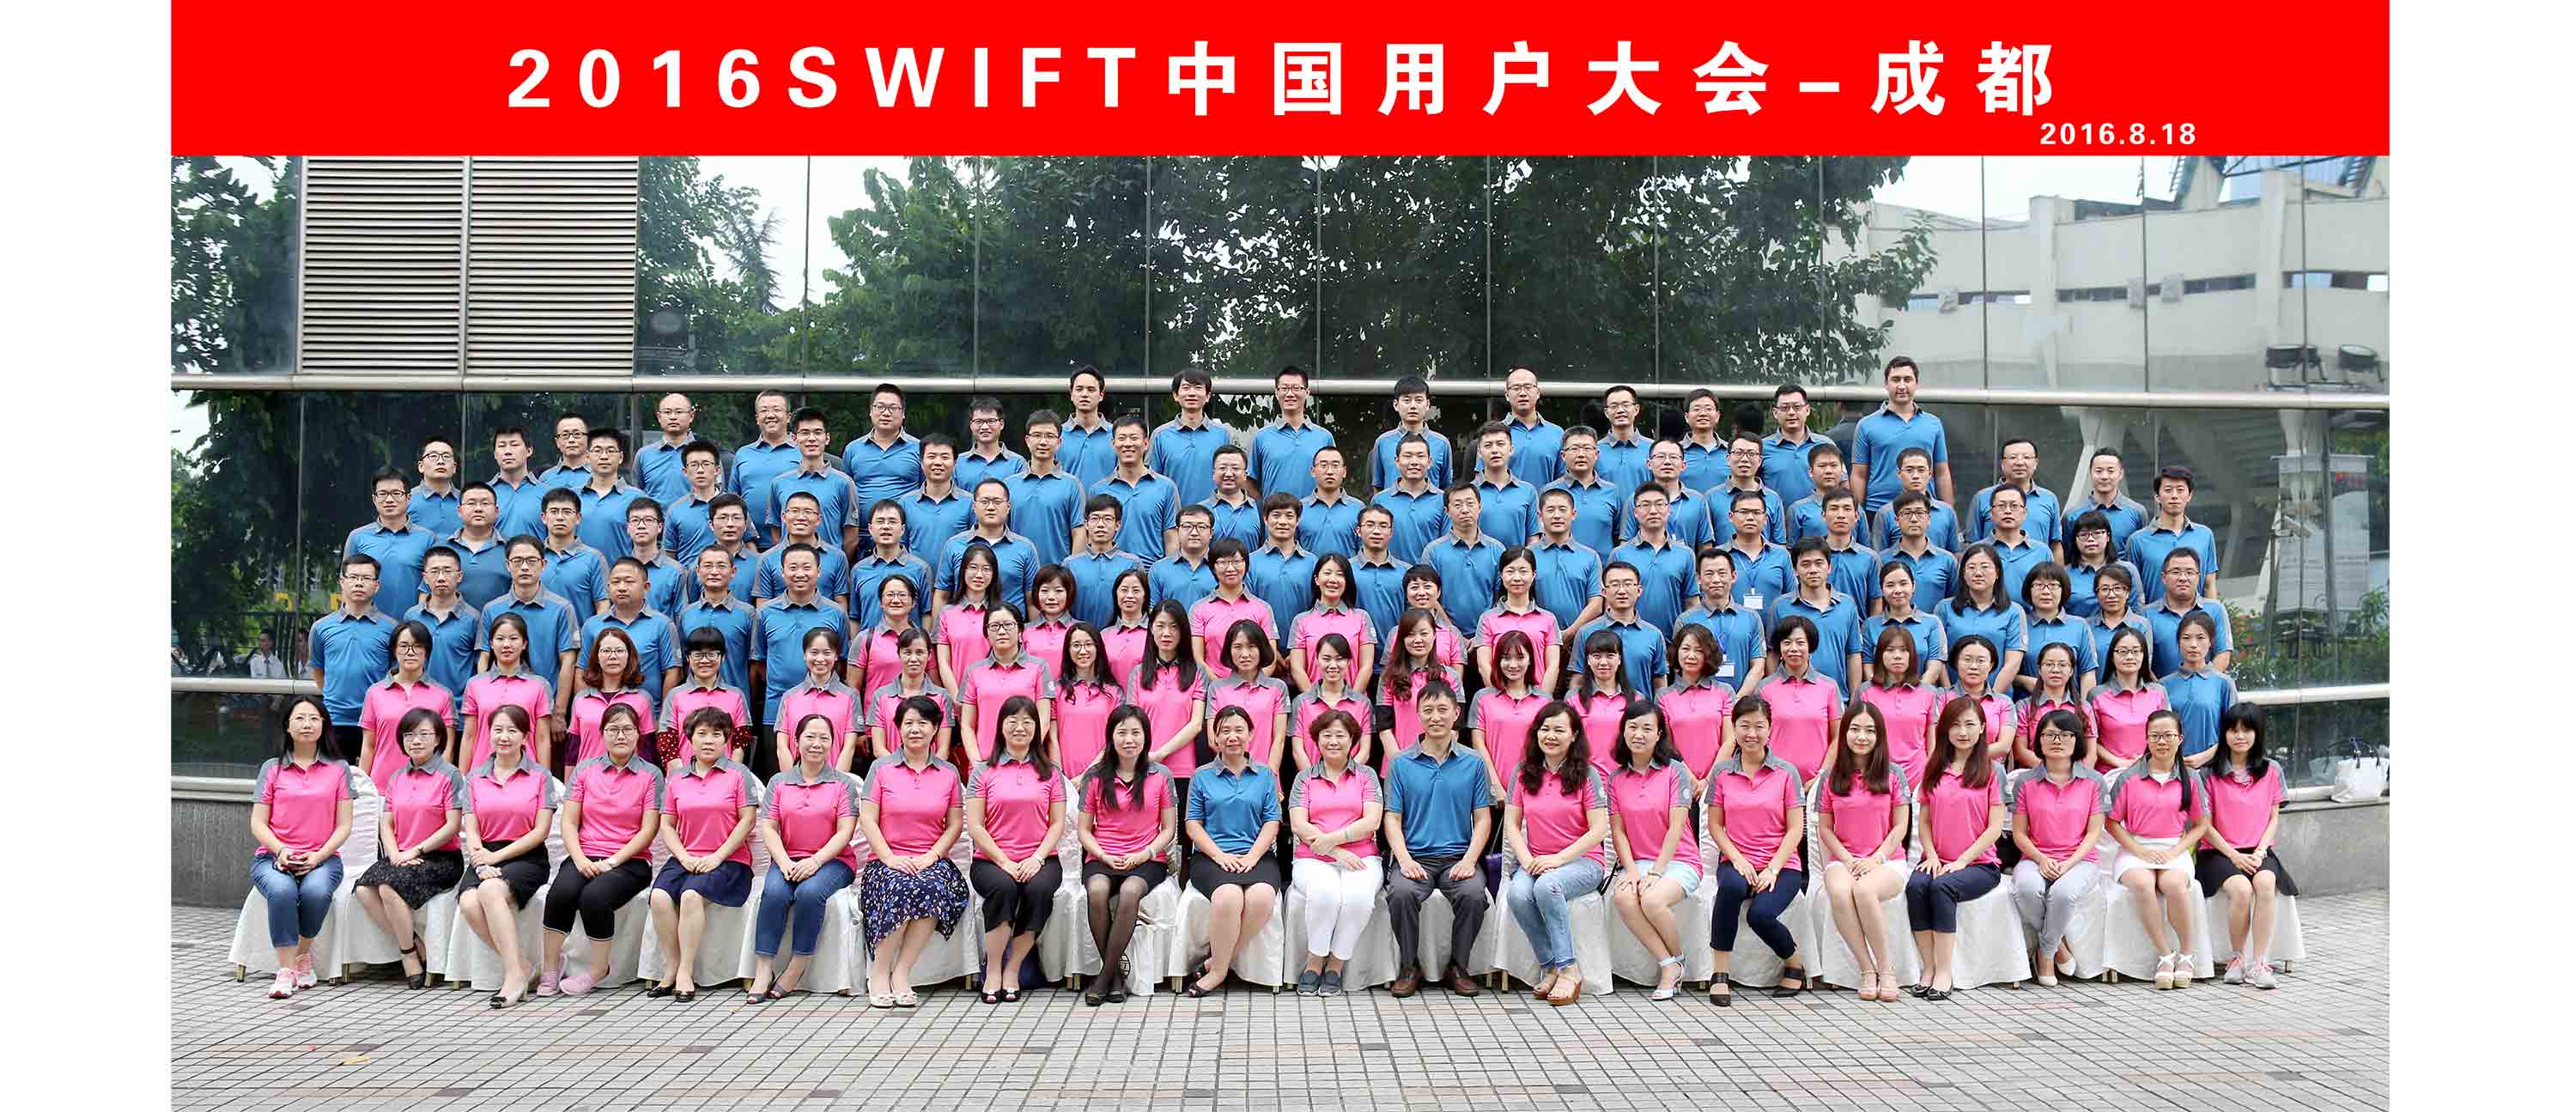 2016SWFT中国用户大会会议合影拍摄